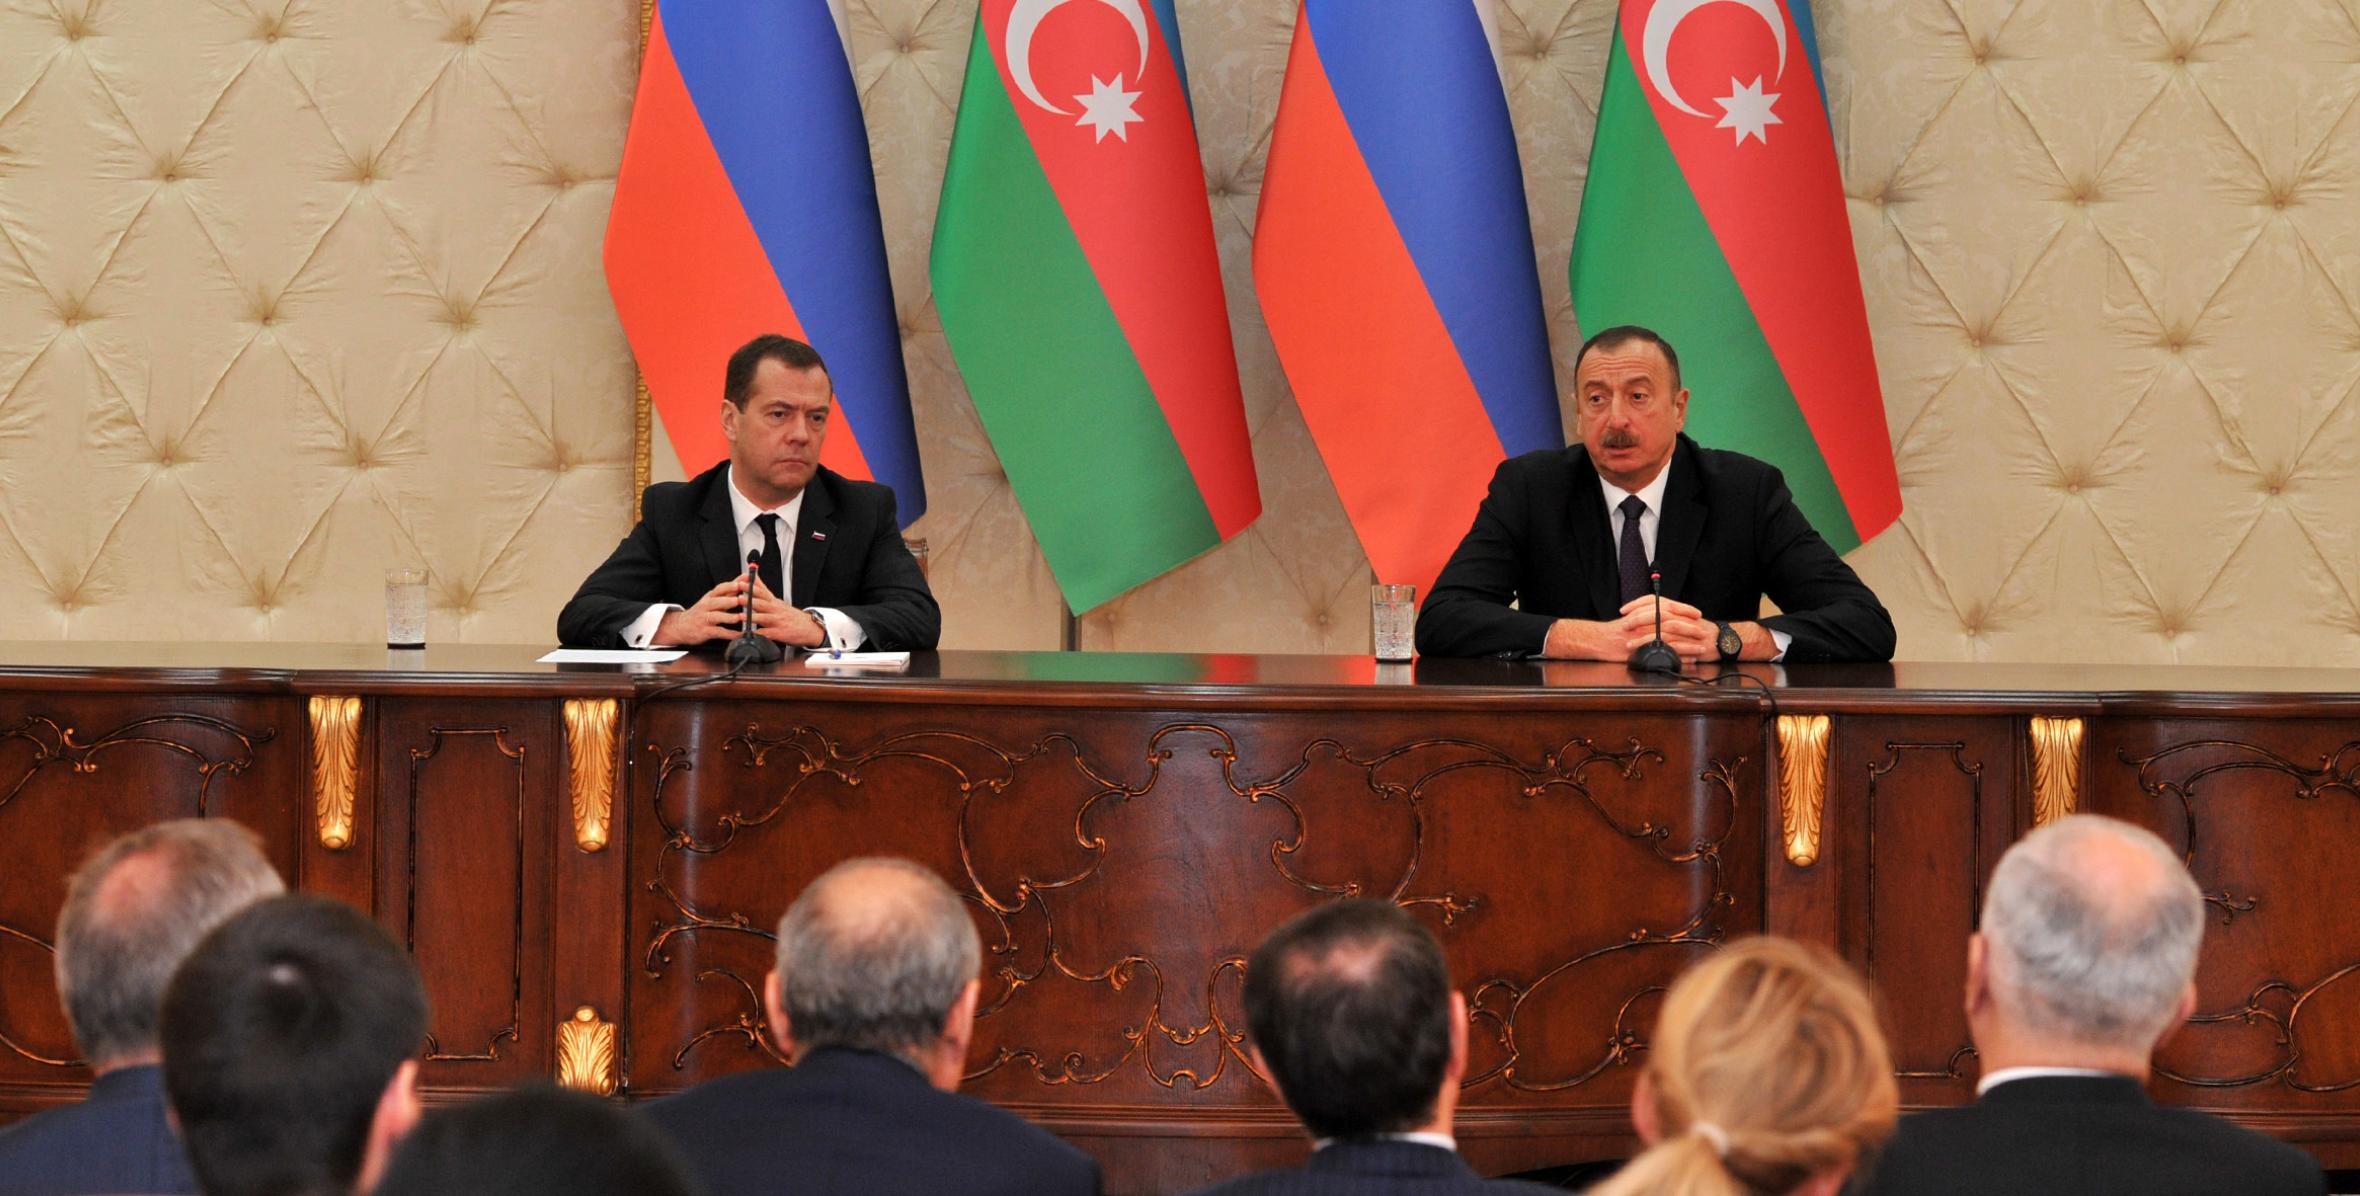 Ильхам Алиев и председатель Правительства России Дмитрий Медведев выступили с заявлениями для печати